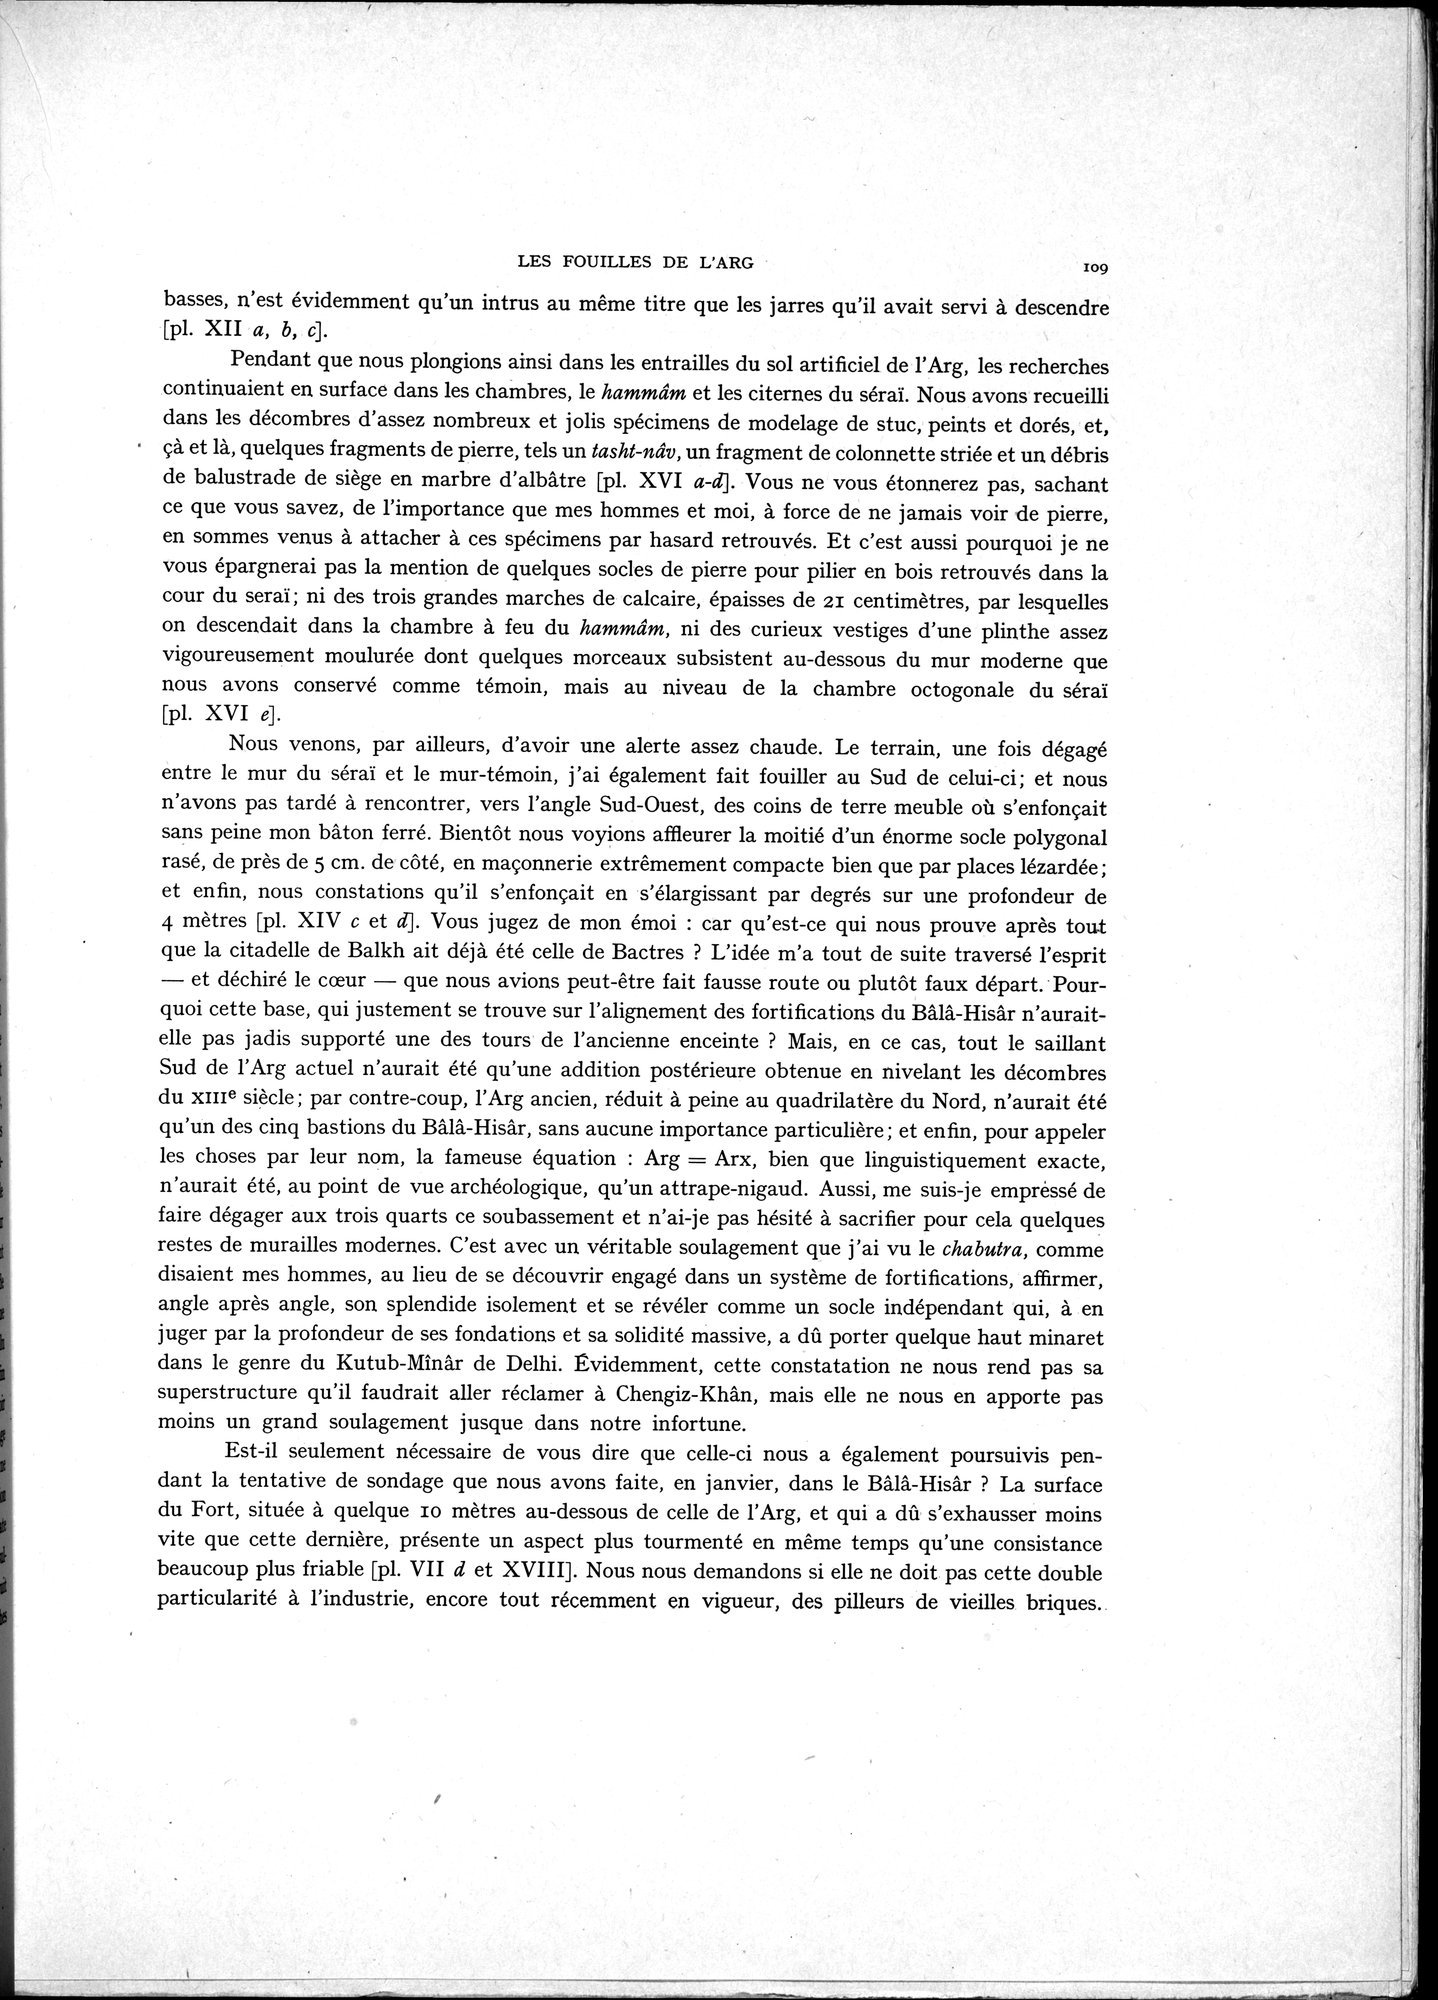 La Vieille Route de l'Inde de Bactres à Taxila : vol.1 / Page 119 (Grayscale High Resolution Image)